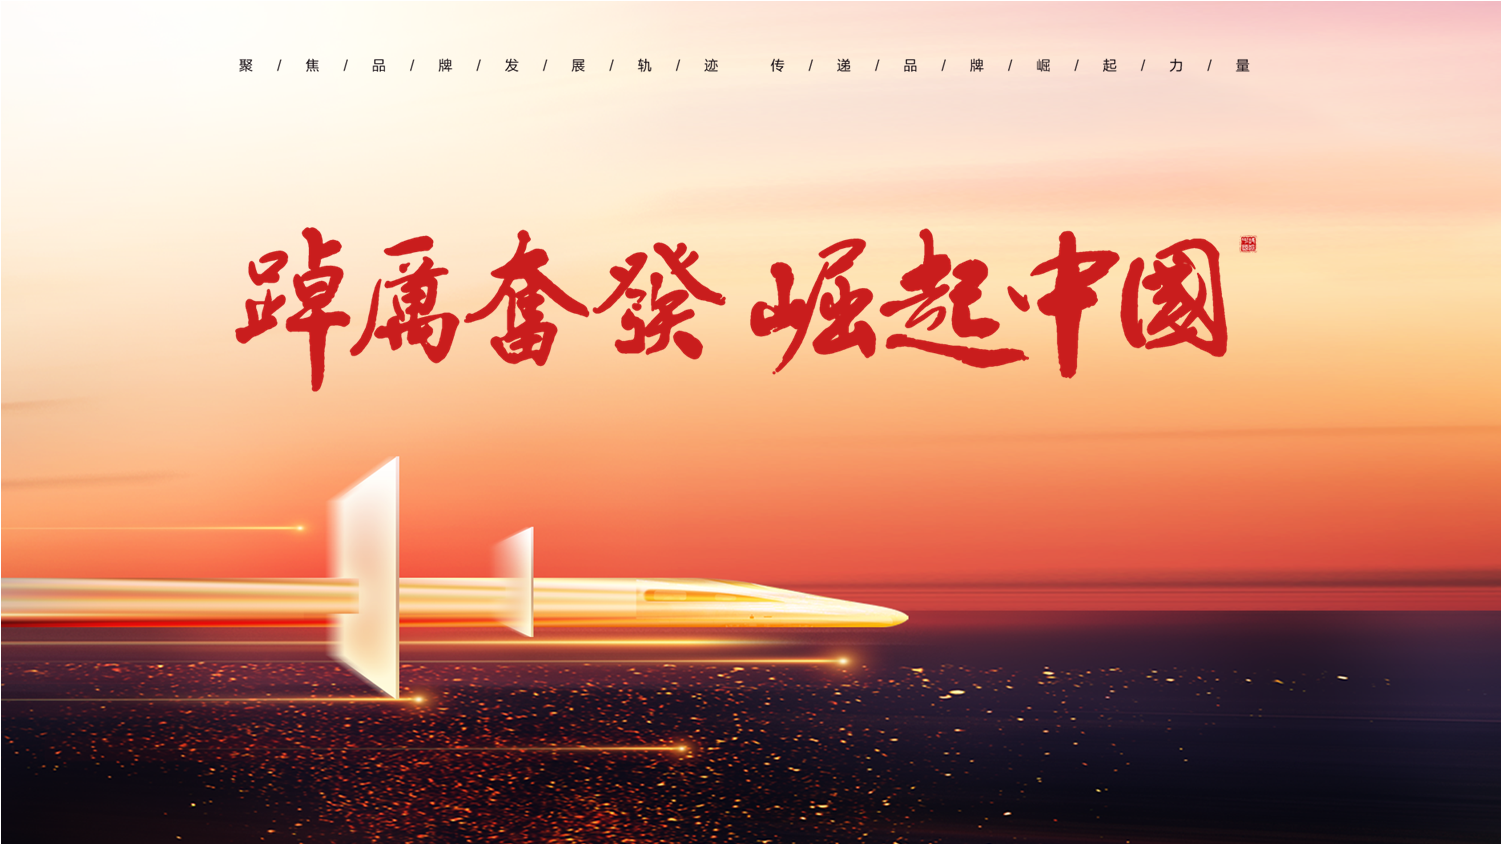 《踔厉奋发·崛起中国》2022年特别专题节目即将开播